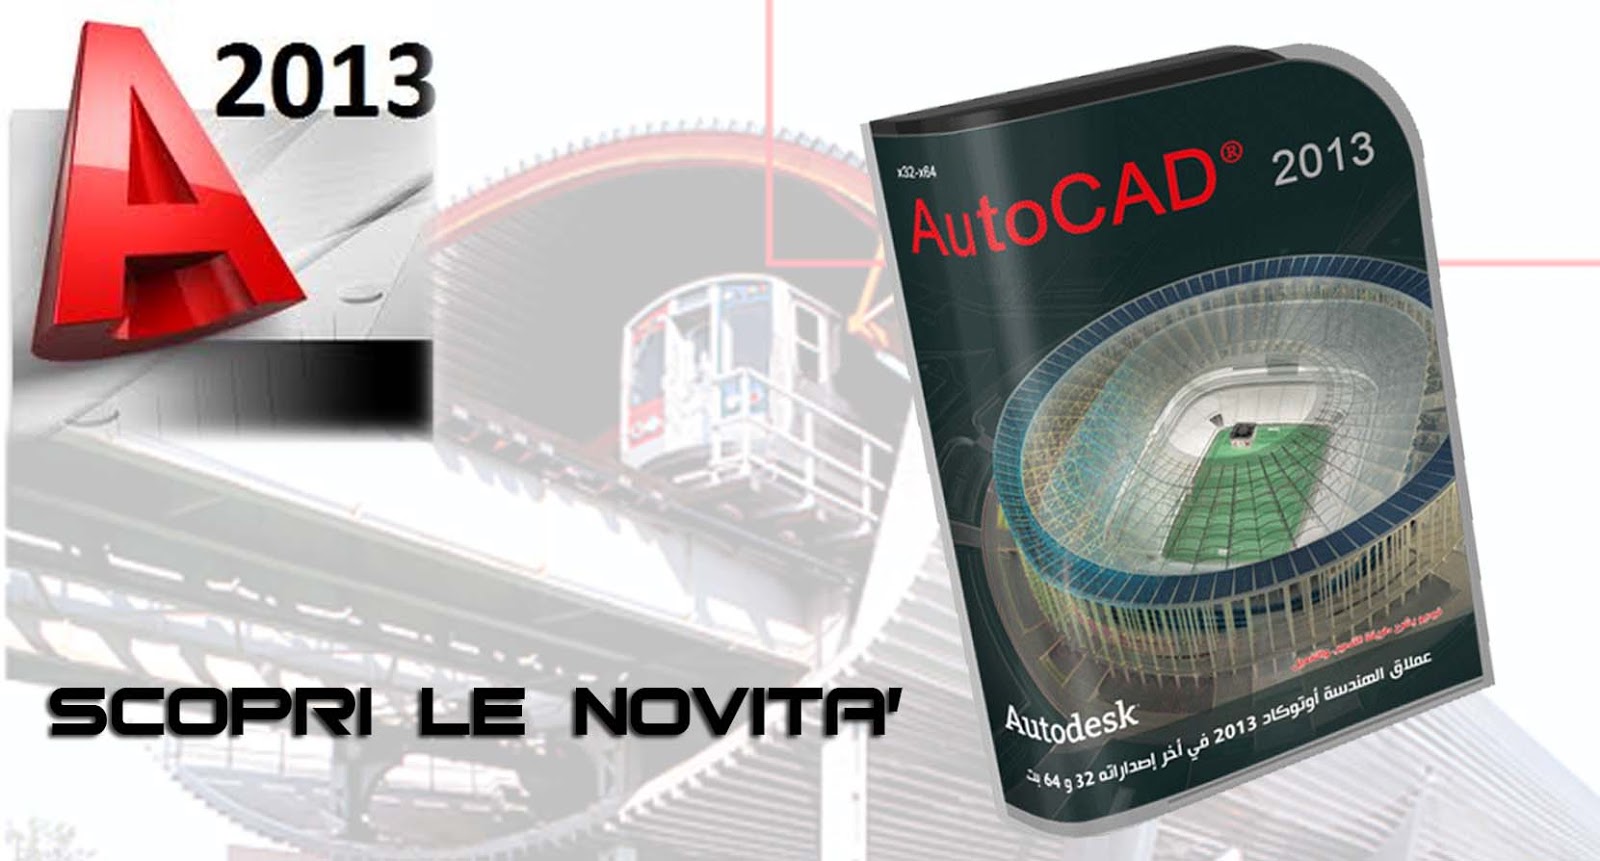 Autodesk Autocad